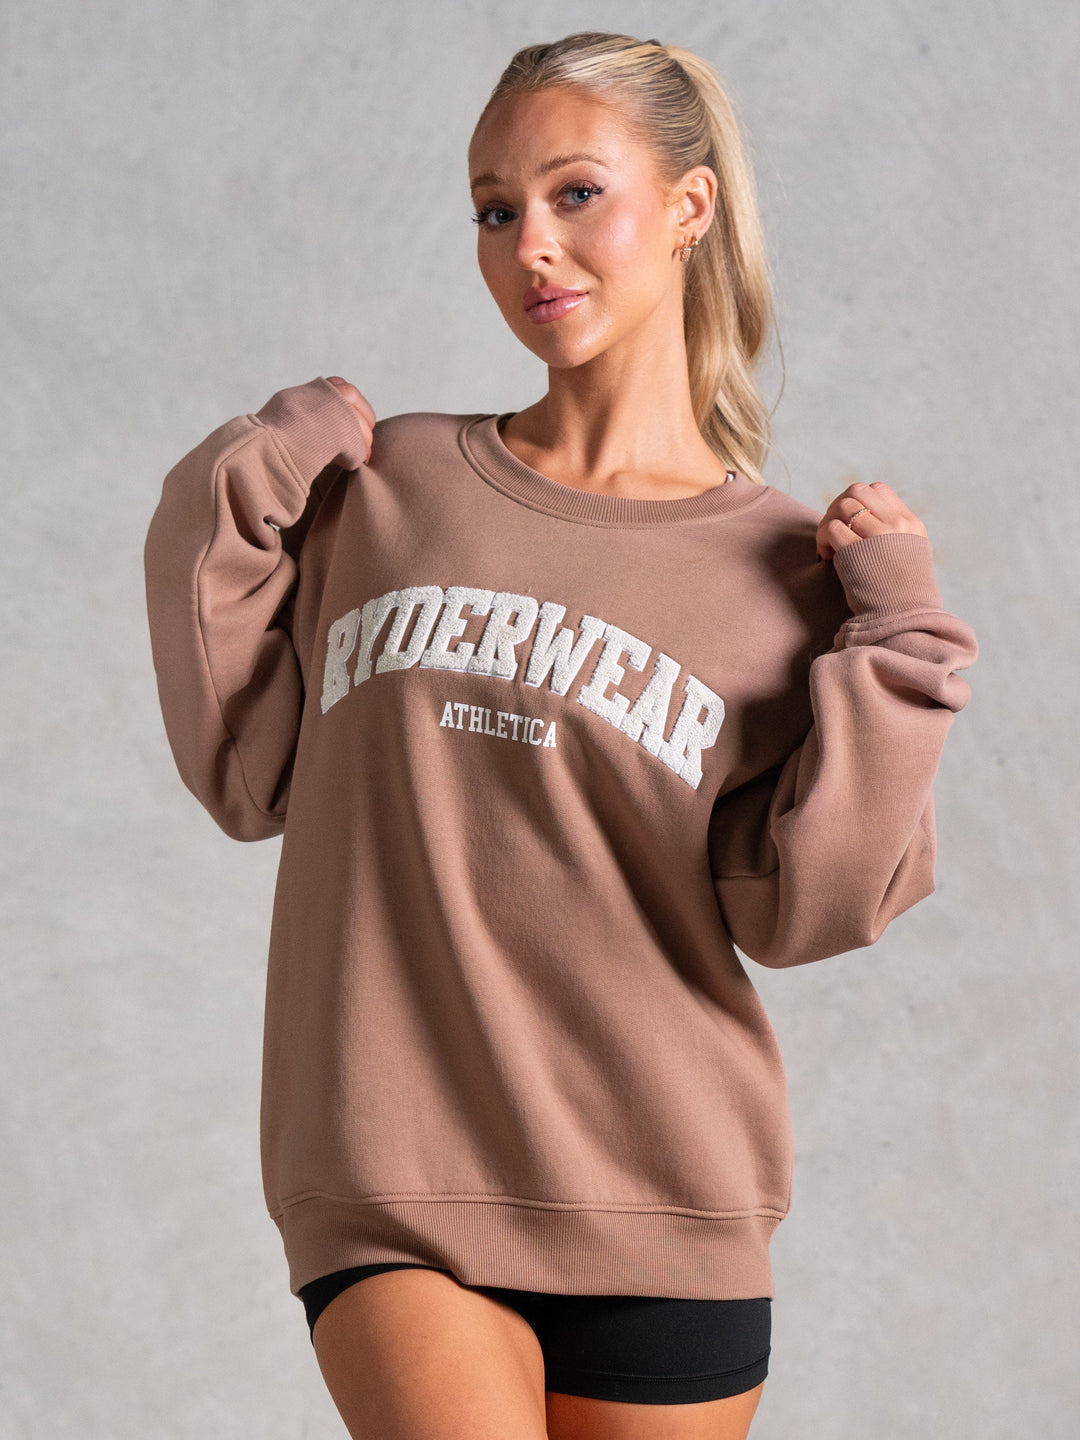 Athletica Sweater - Mocha Clothing Ryderwear 